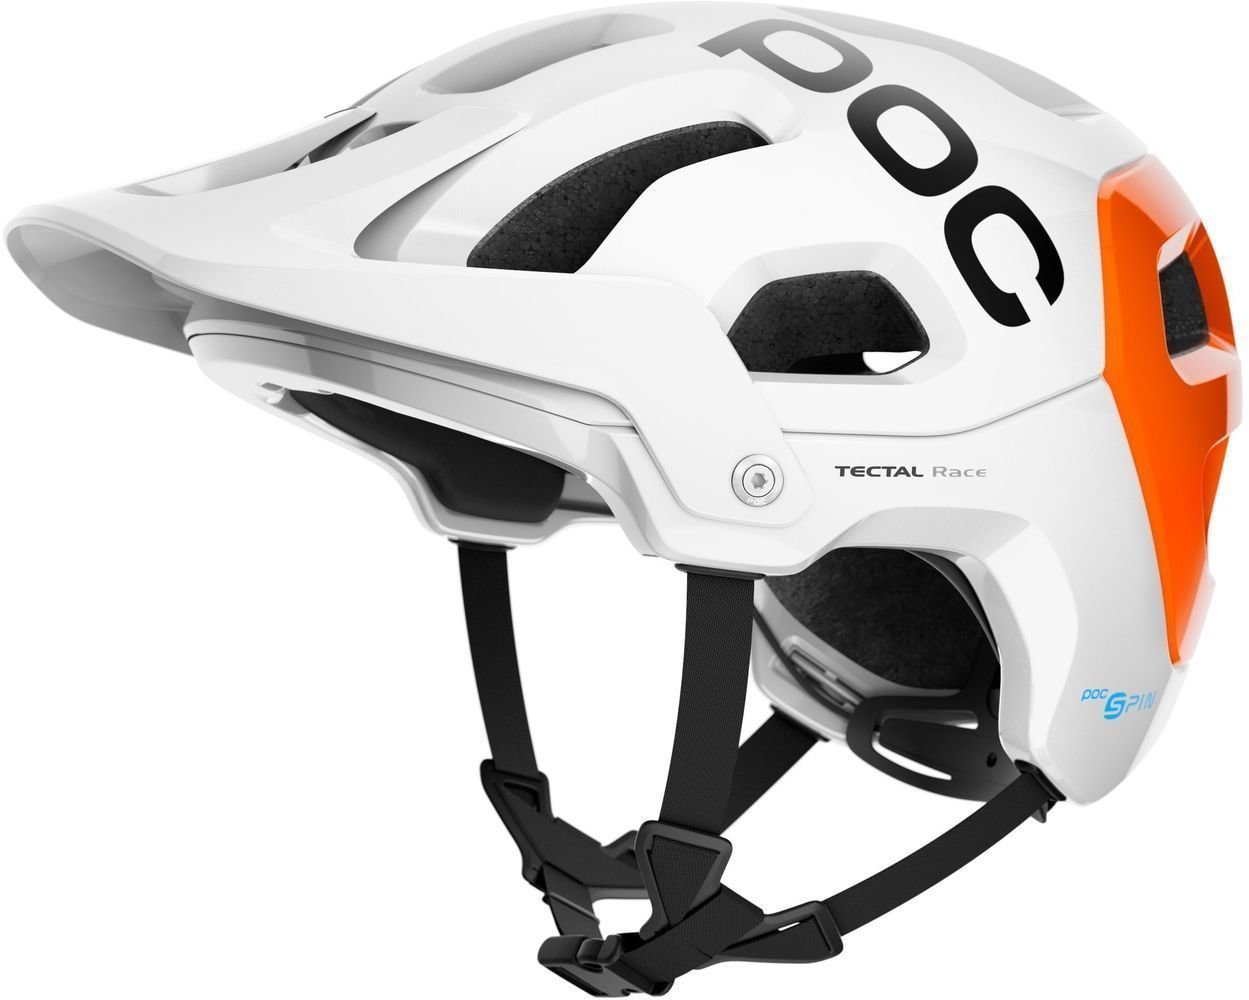 Casque de vélo POC Tectal Race SPIN NFC Hydrogen White/Fluorescent Orange AVIP 51-54 Casque de vélo